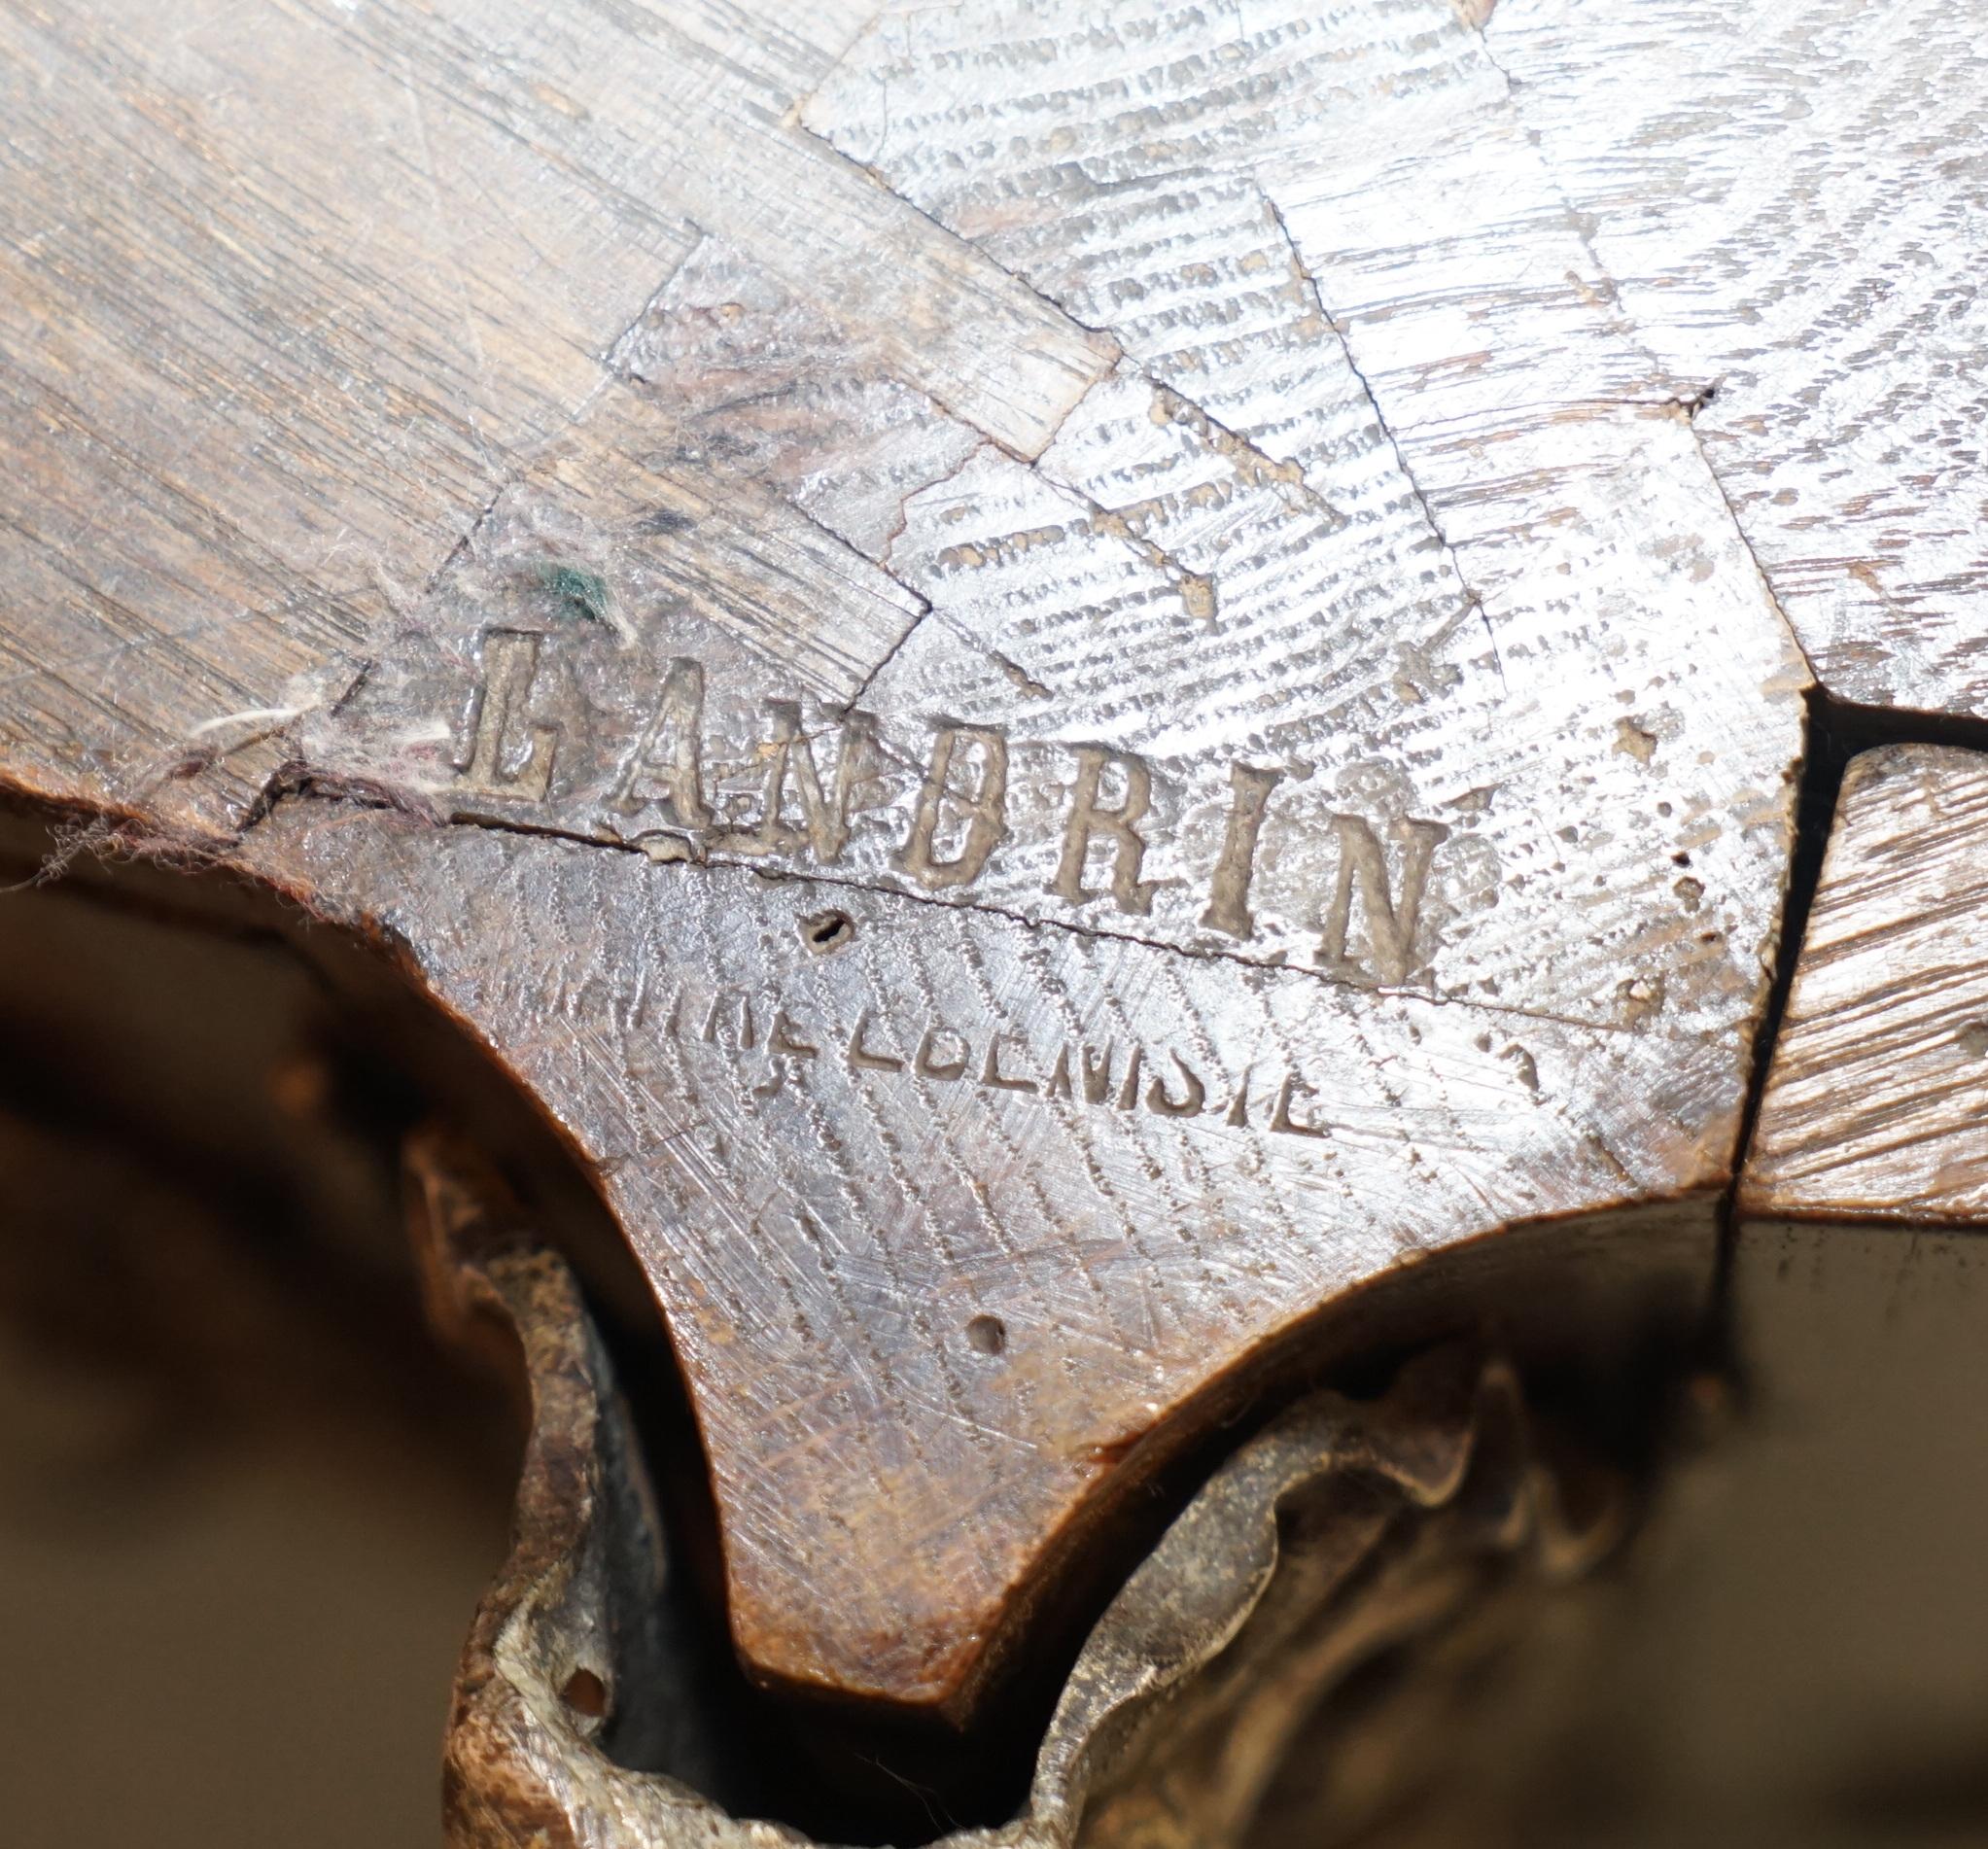 Nous sommes ravis de vous présenter cet important buffet restauré vers 1750 en marqueterie de bois de roi avec des ferrures en argent poli. Le buffet est entièrement estampillé pour Germain Landrin, 1710-1785.

Il s'agit d'une trouvaille de